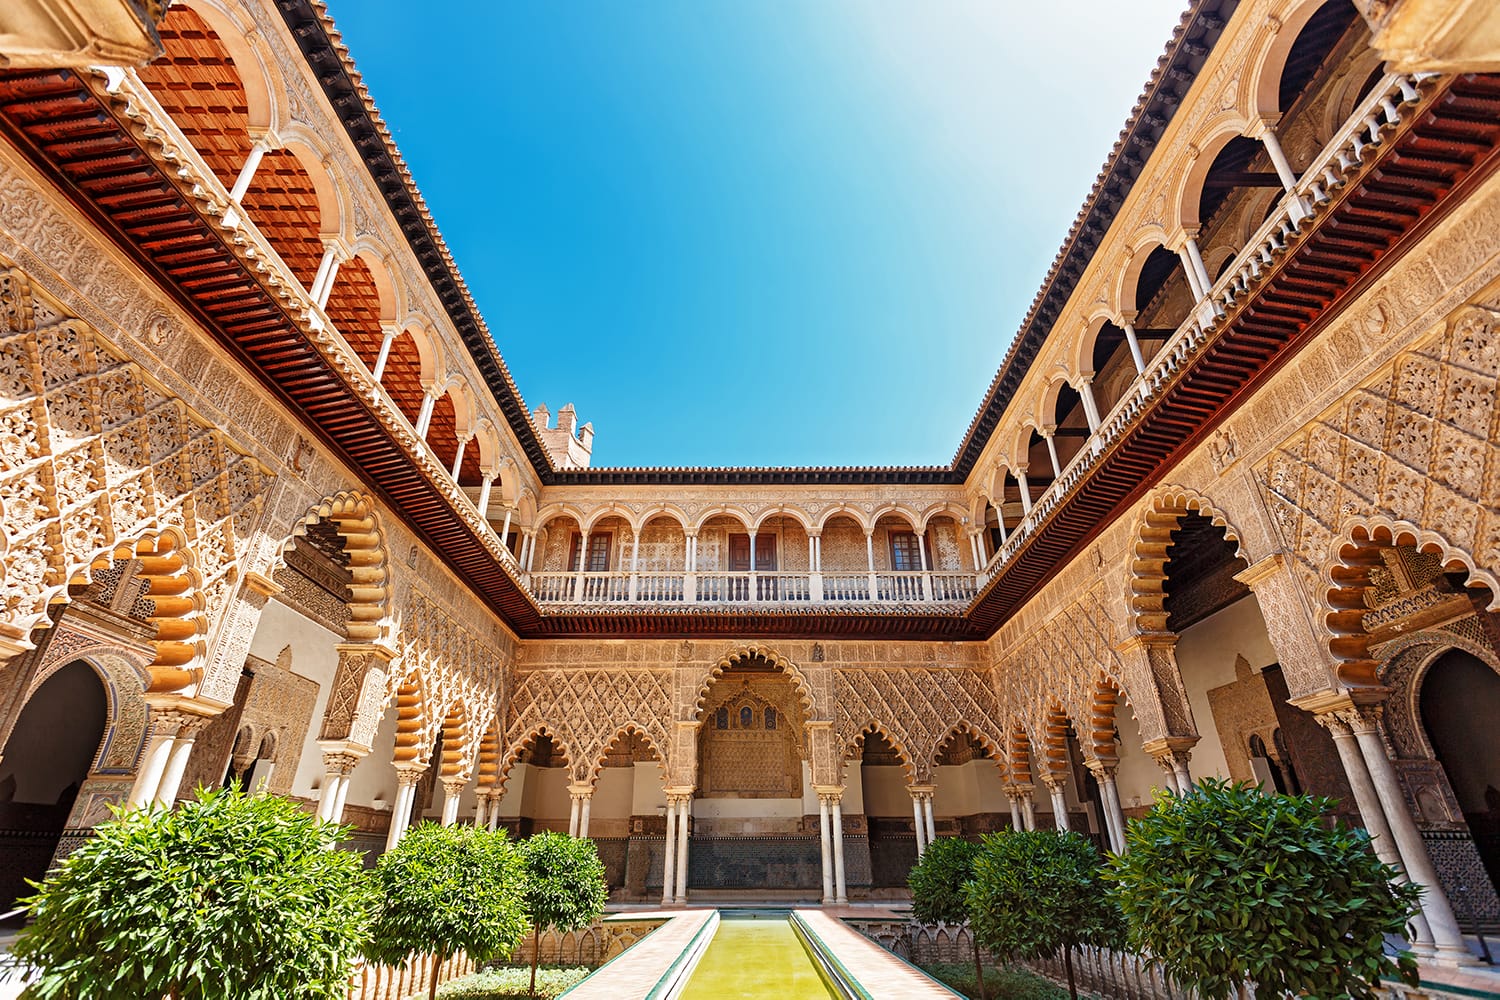 Palazzo dell'Alcazar, famosa architettura andalusa.  Vecchio palazzo arabo a Siviglia, Spagna.